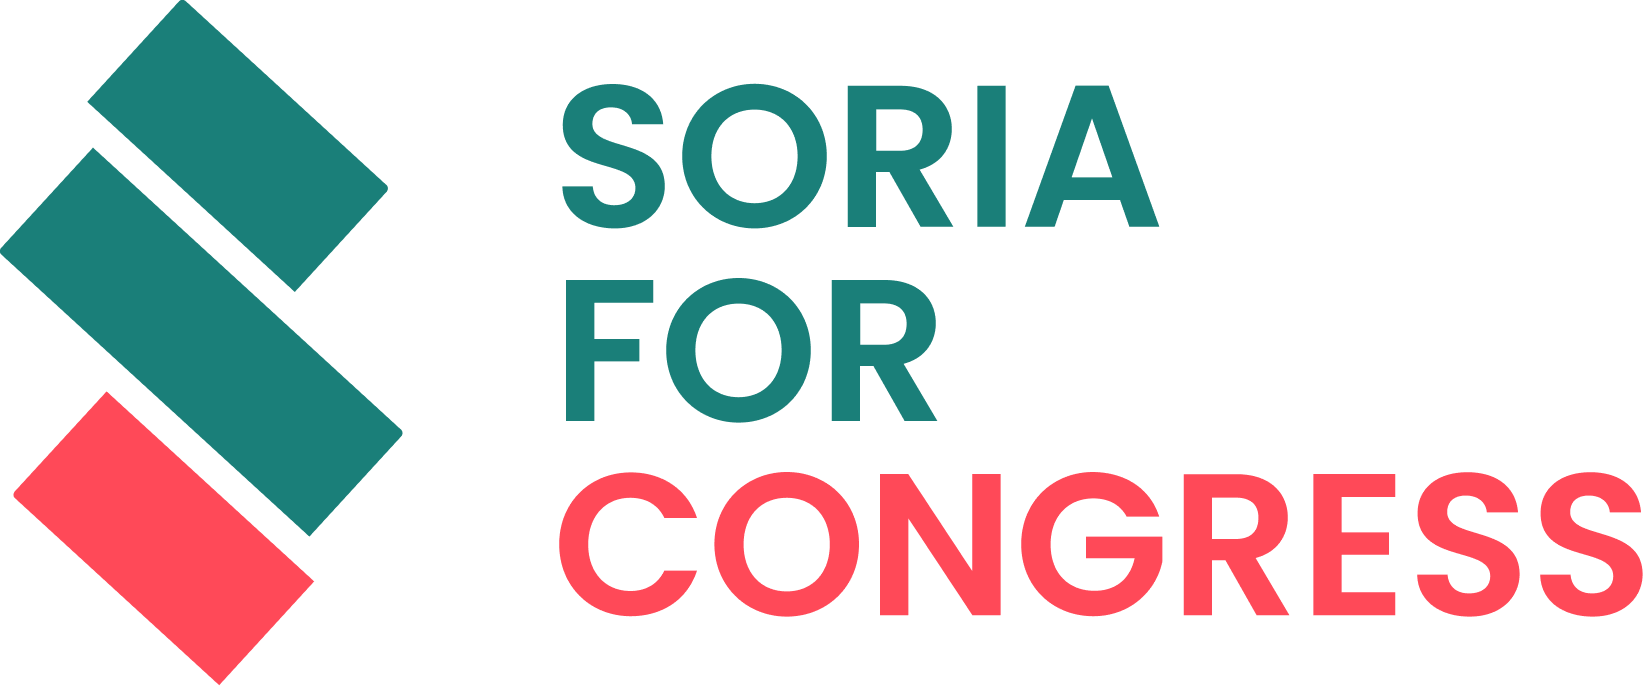 Quy trình & các tiêu chí đánh giá sàn forex của chúng tôi - Soria for Congress